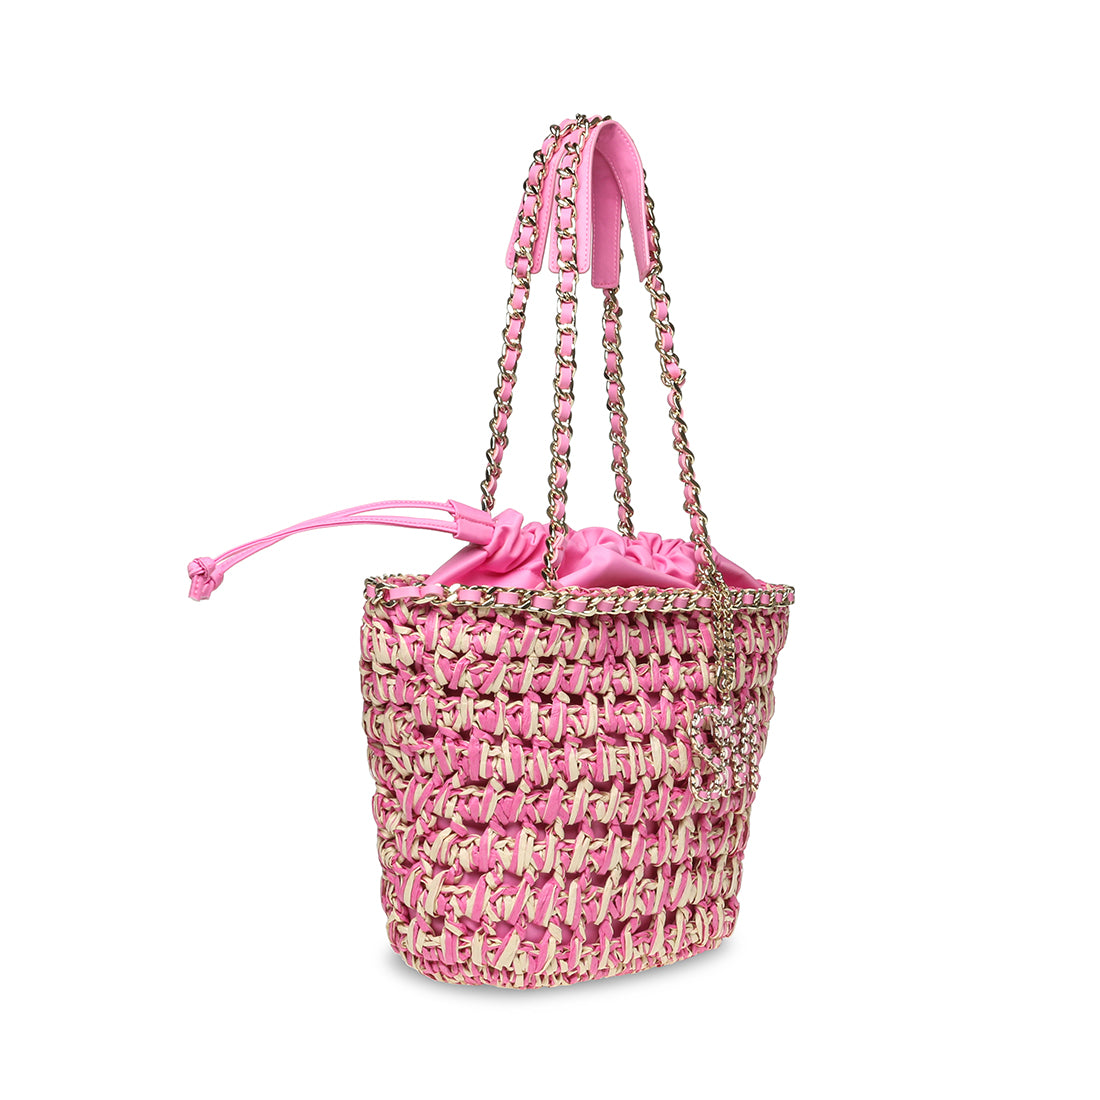 Bshore Shoulder bag Natural/Pink- Hover Image